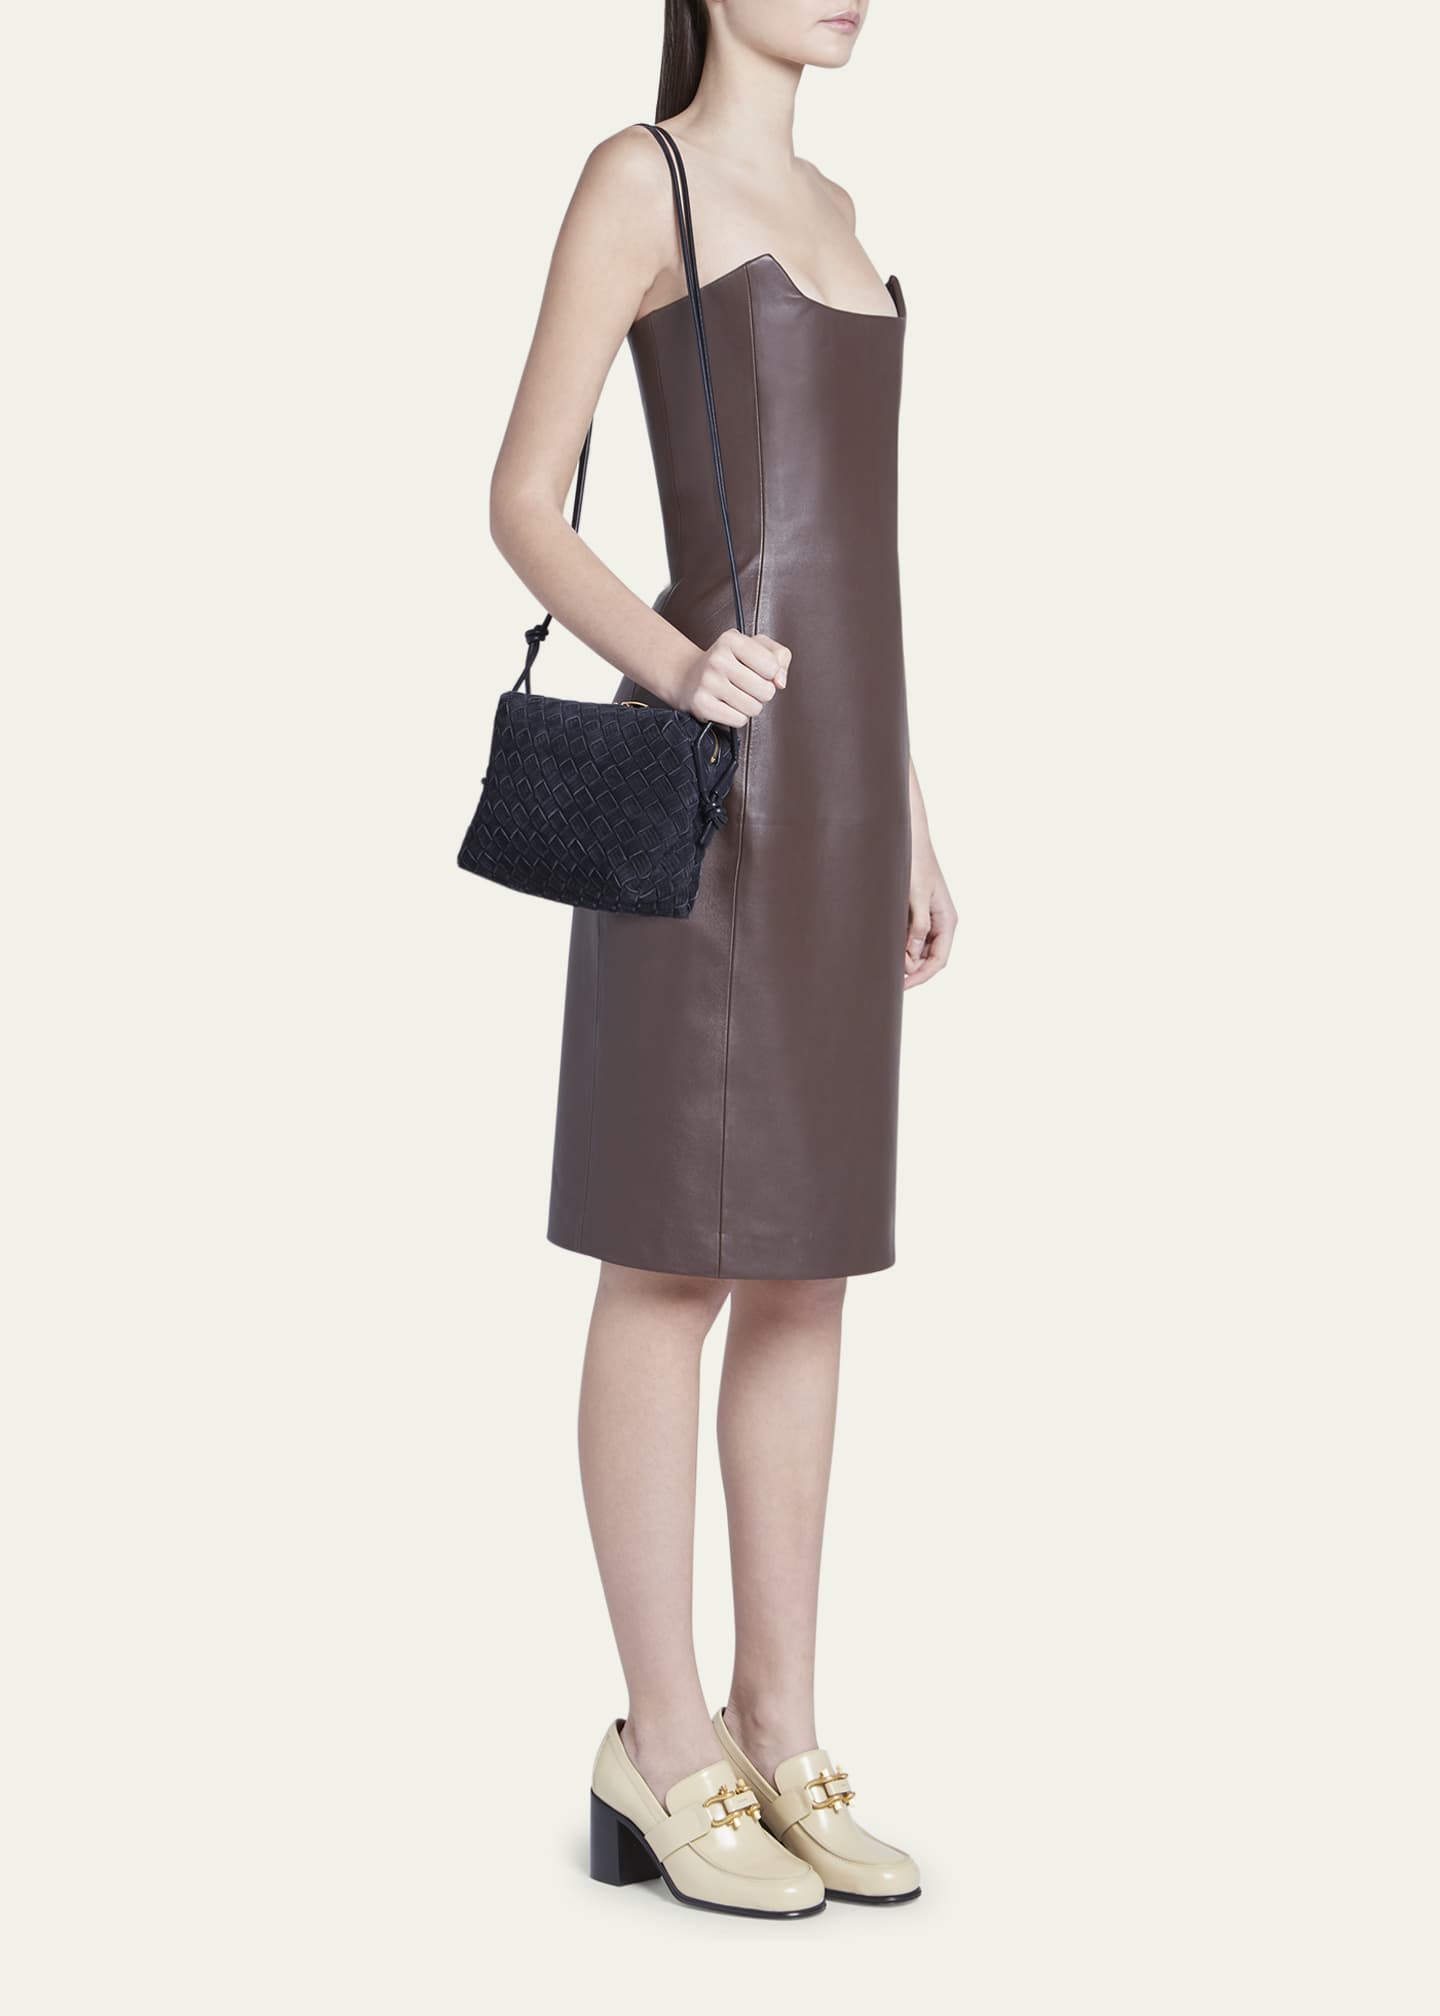 Loop Small Leather Crossbody Bag in Brown - Bottega Veneta